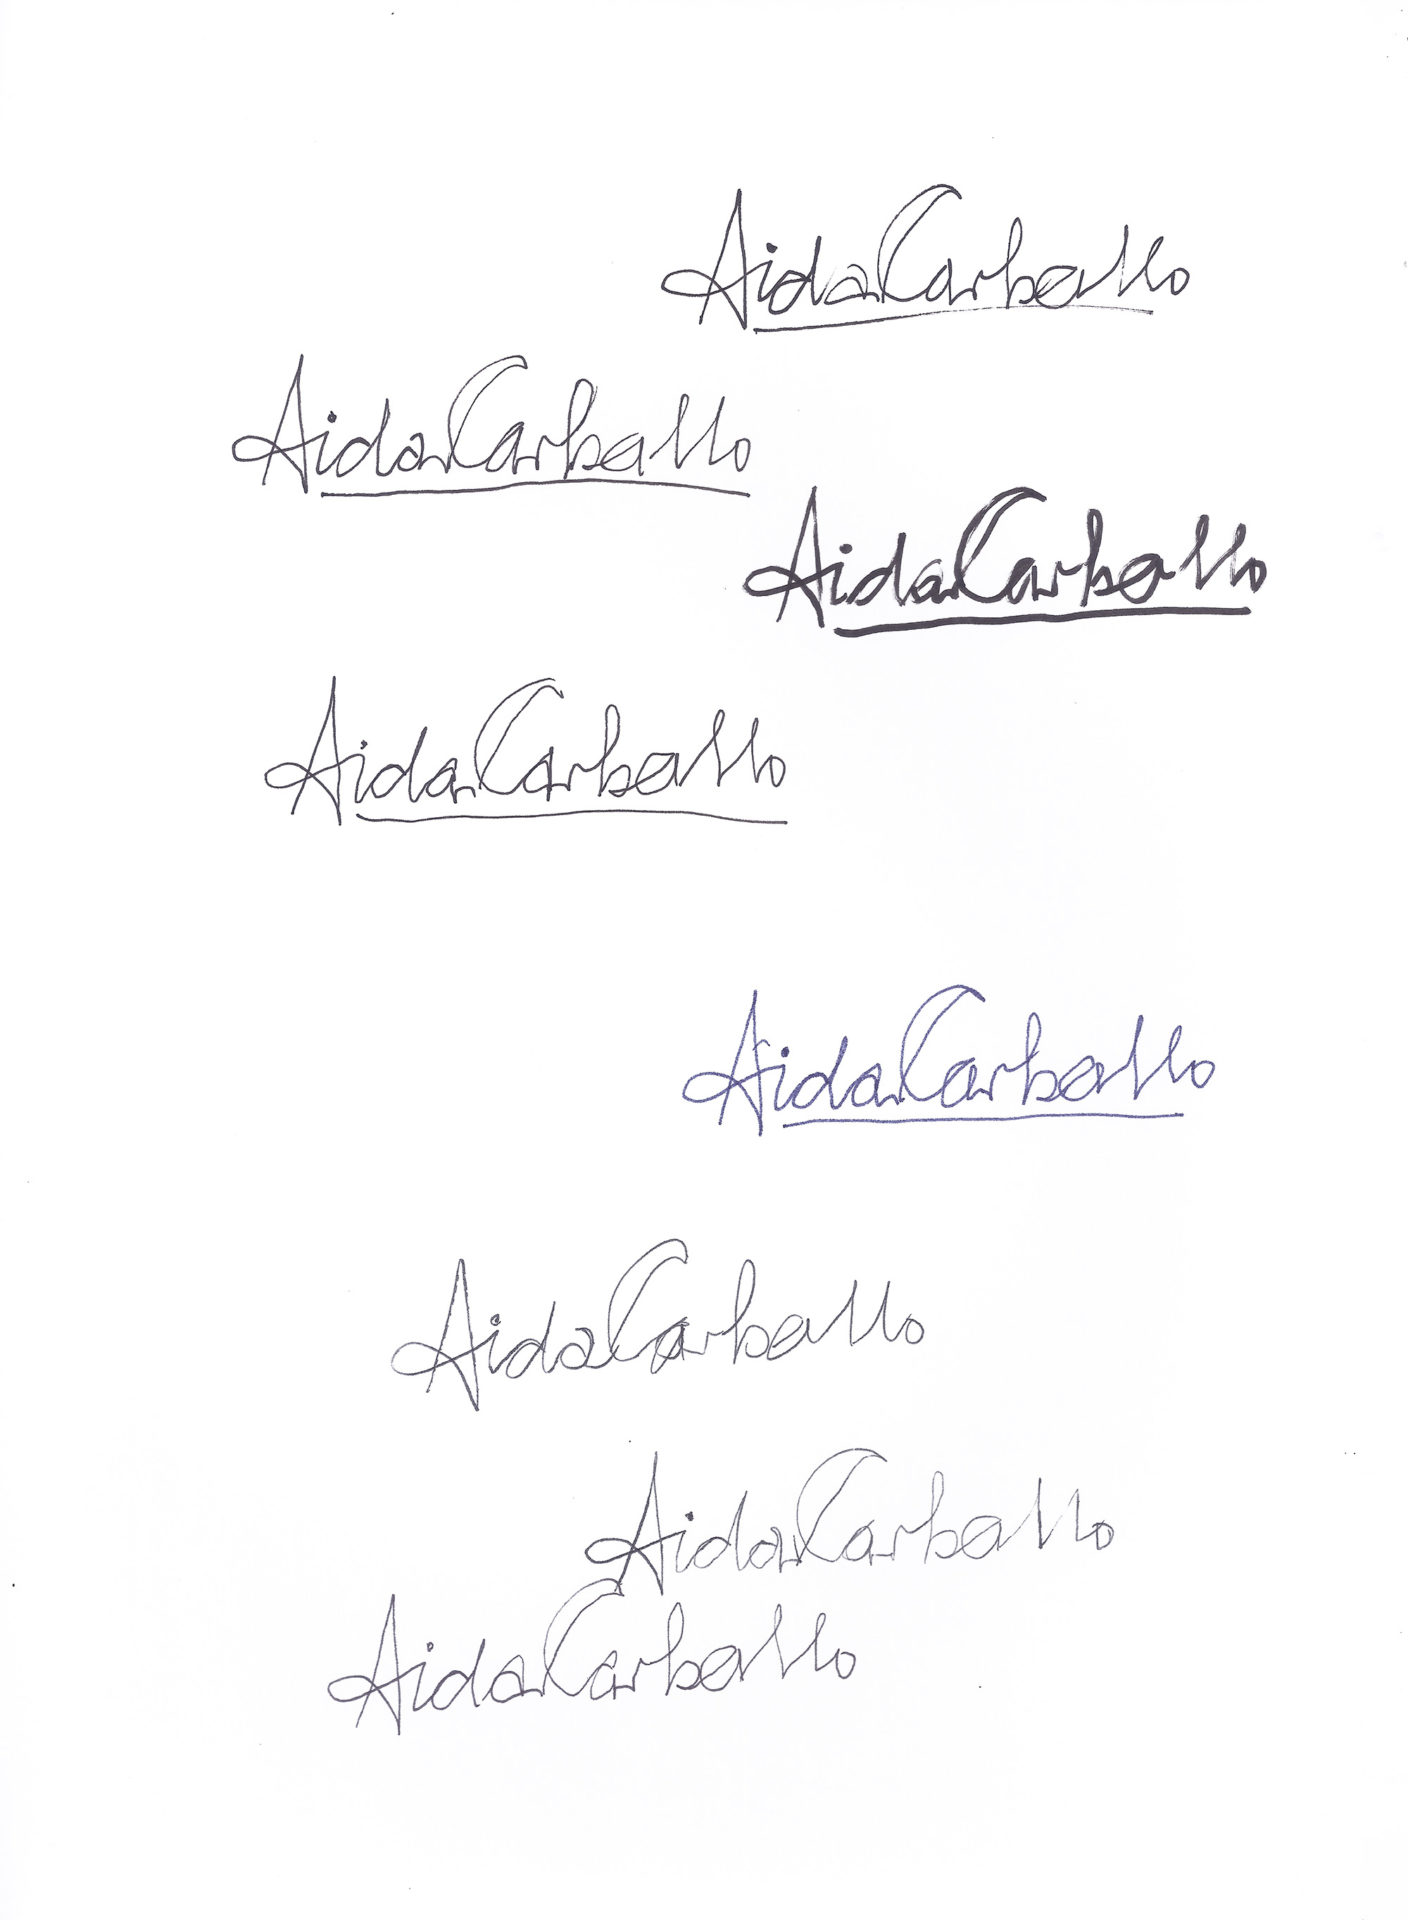 Aída Carballo. Firmas en reclamo de horas, Junta de Clasificación docente, 10 dic 1964. Serie Manuscritos